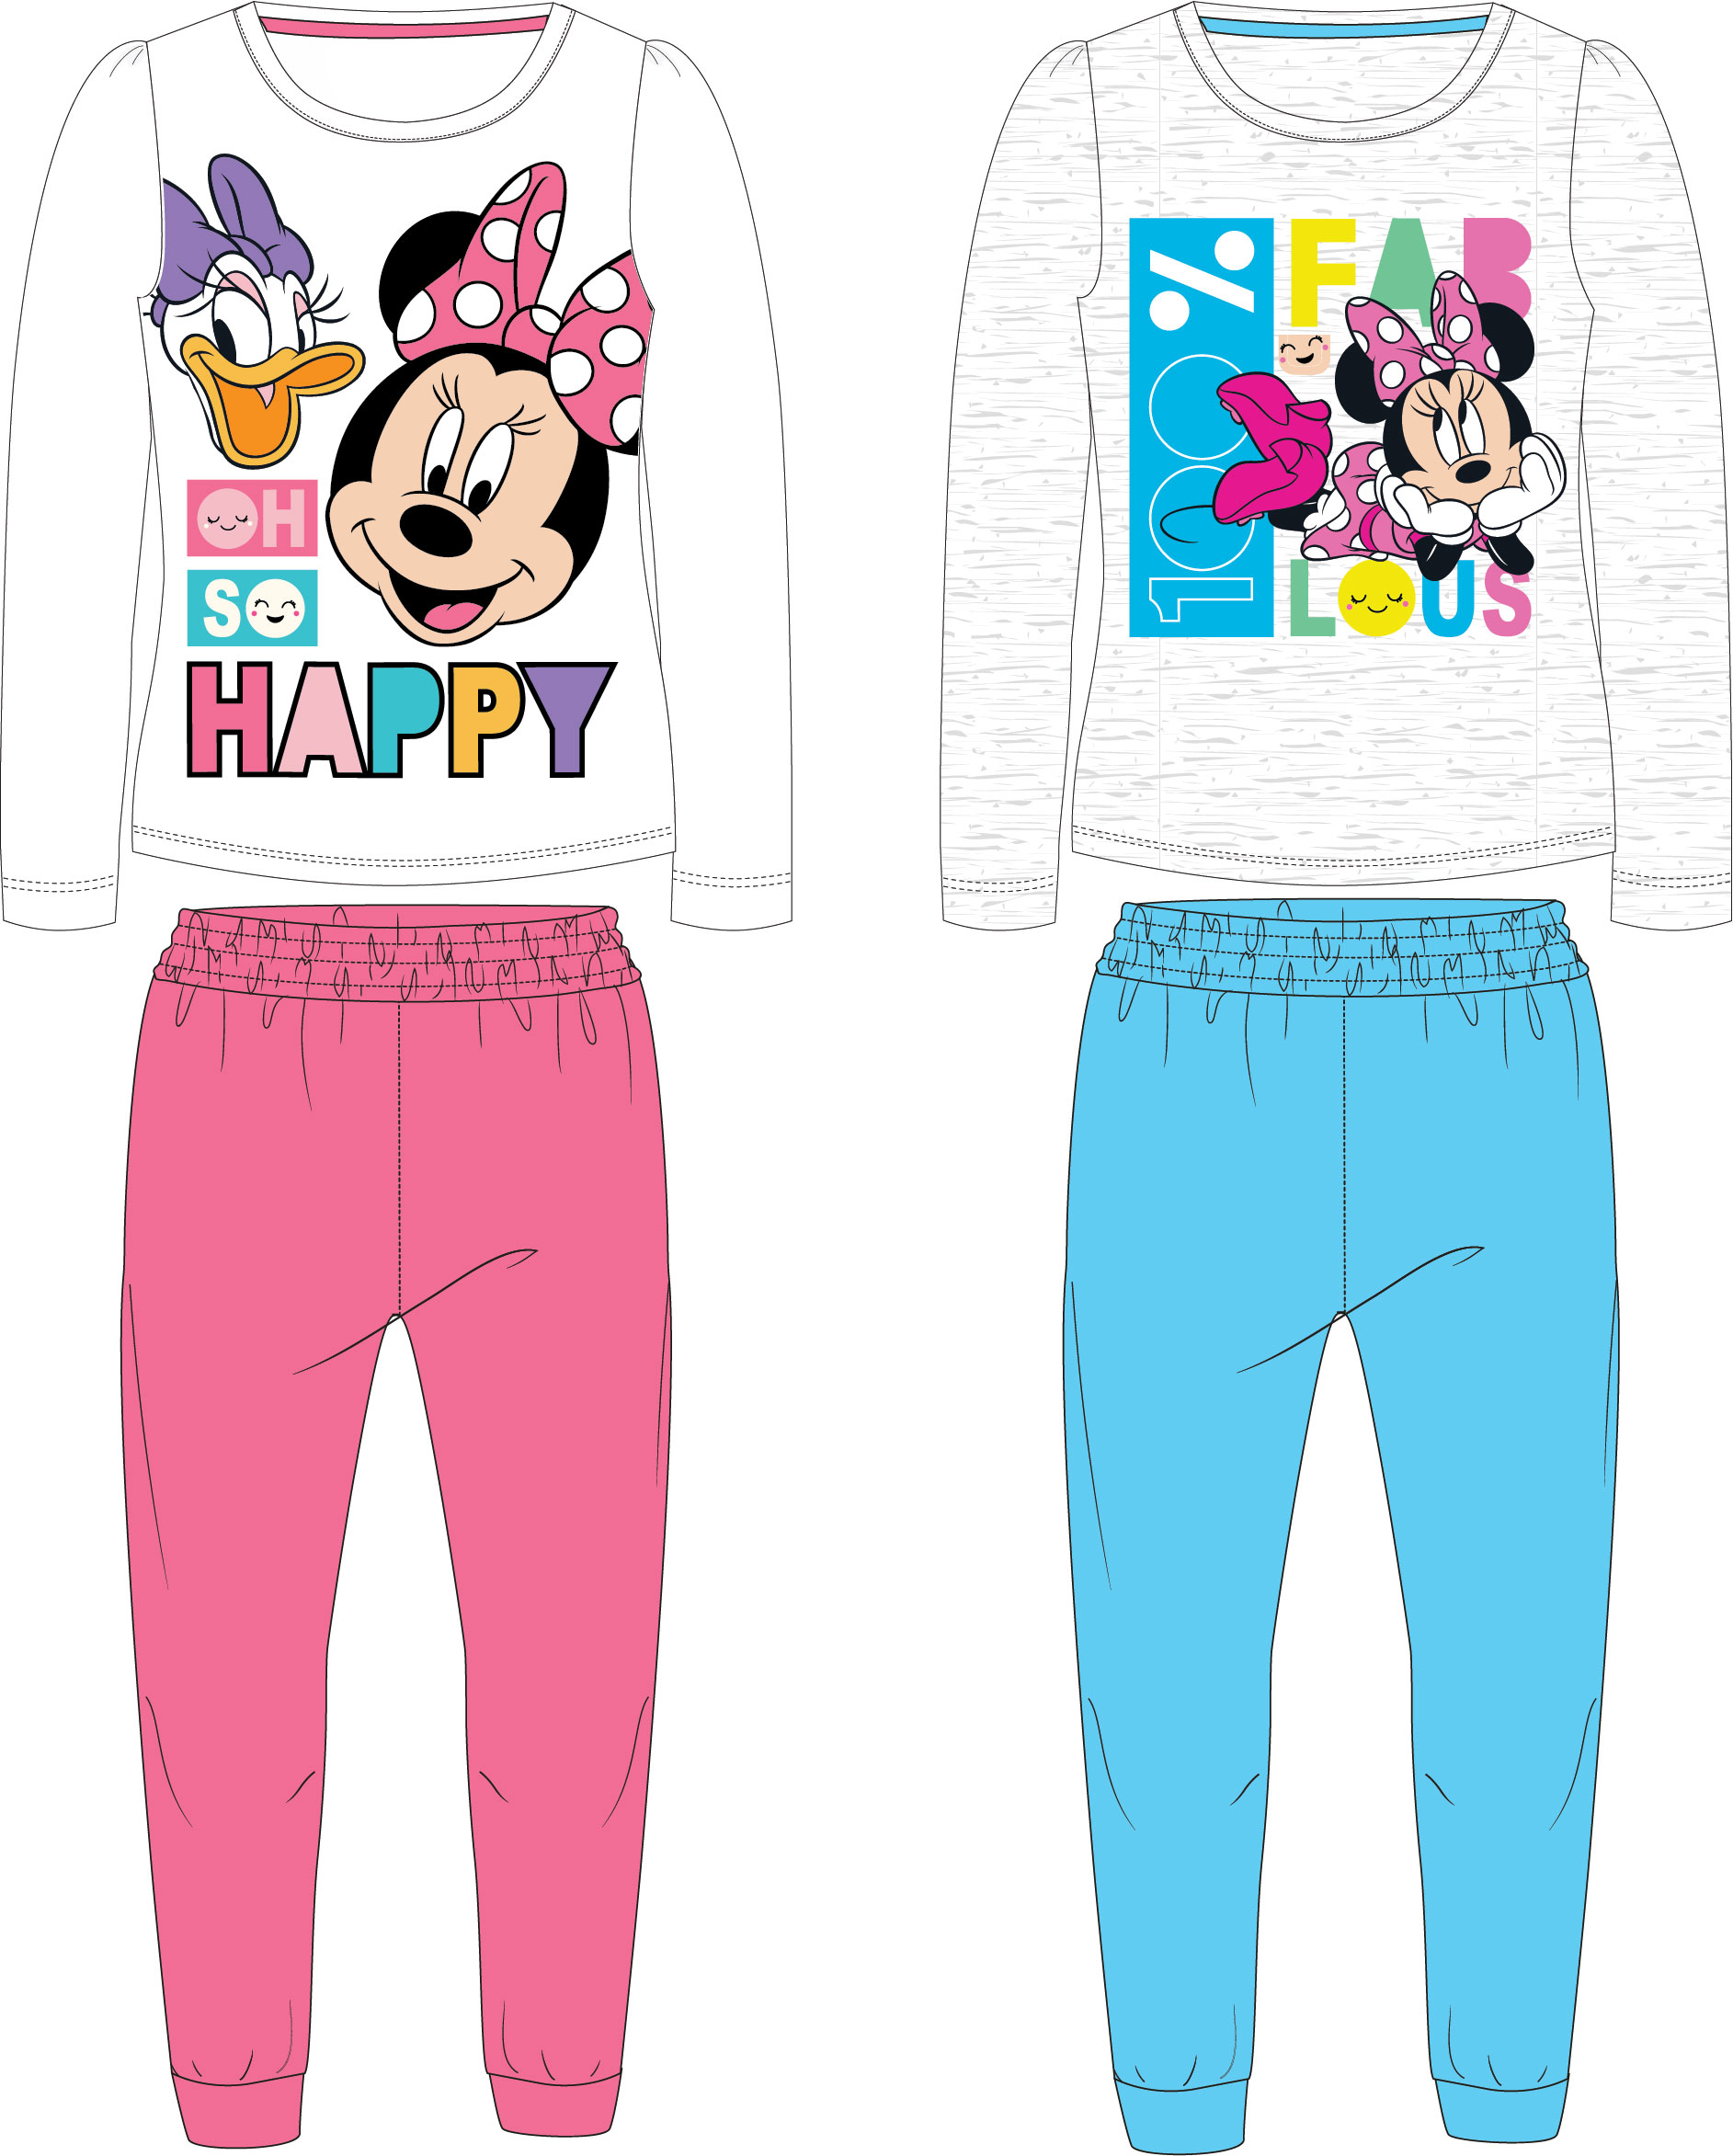 Minnie Mouse - licence Dívčí pyžamo - Minnie Mouse 52049146, šedá / světle modré kalhoty Barva: Šedá, Velikost: 110